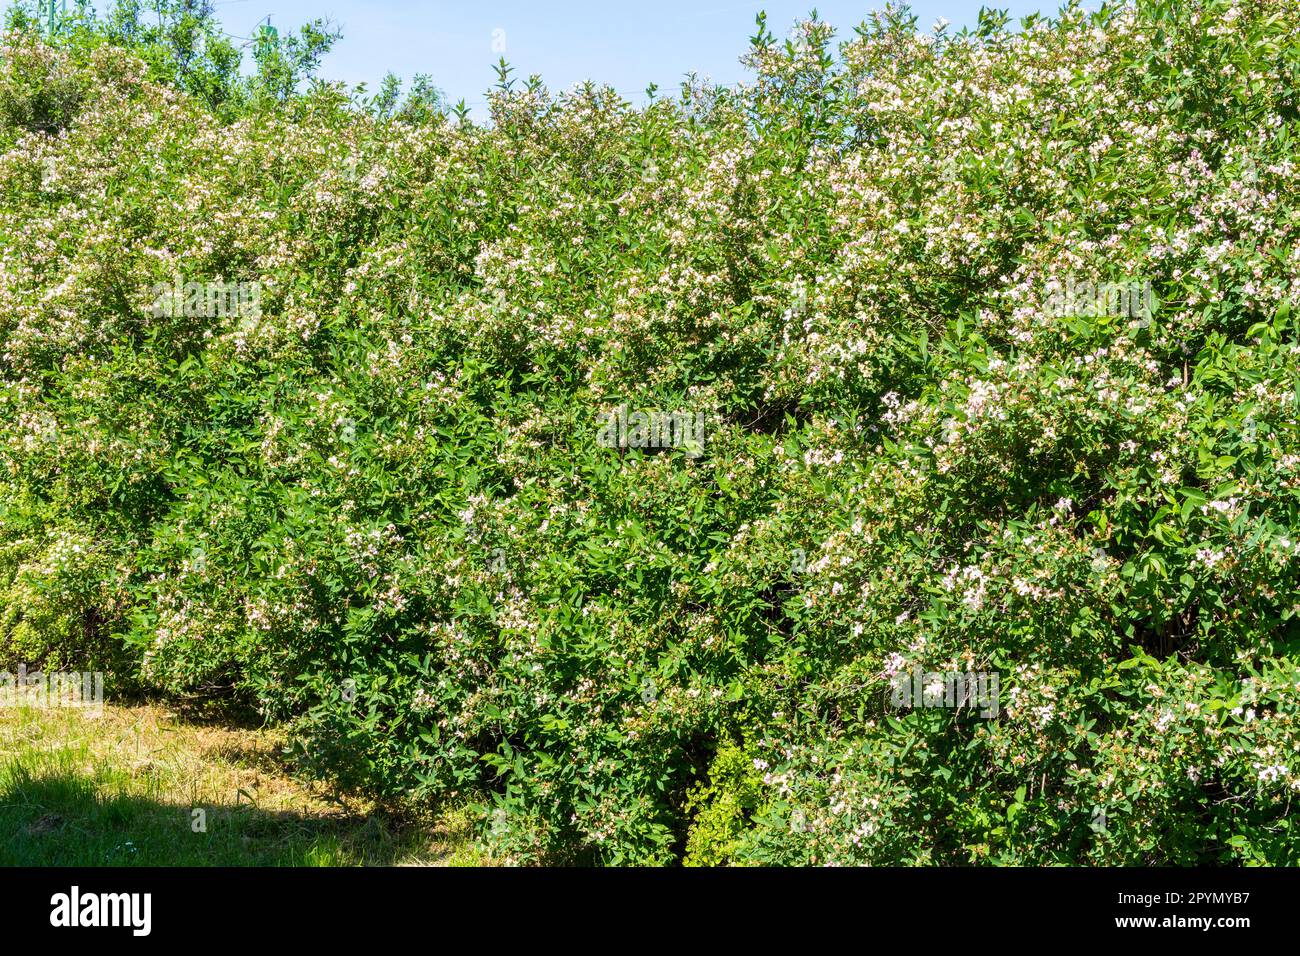 Lonicera tatarica (Tatarian honeysuckle) shrub blooming in spring, Hungary, Europe Stock Photo